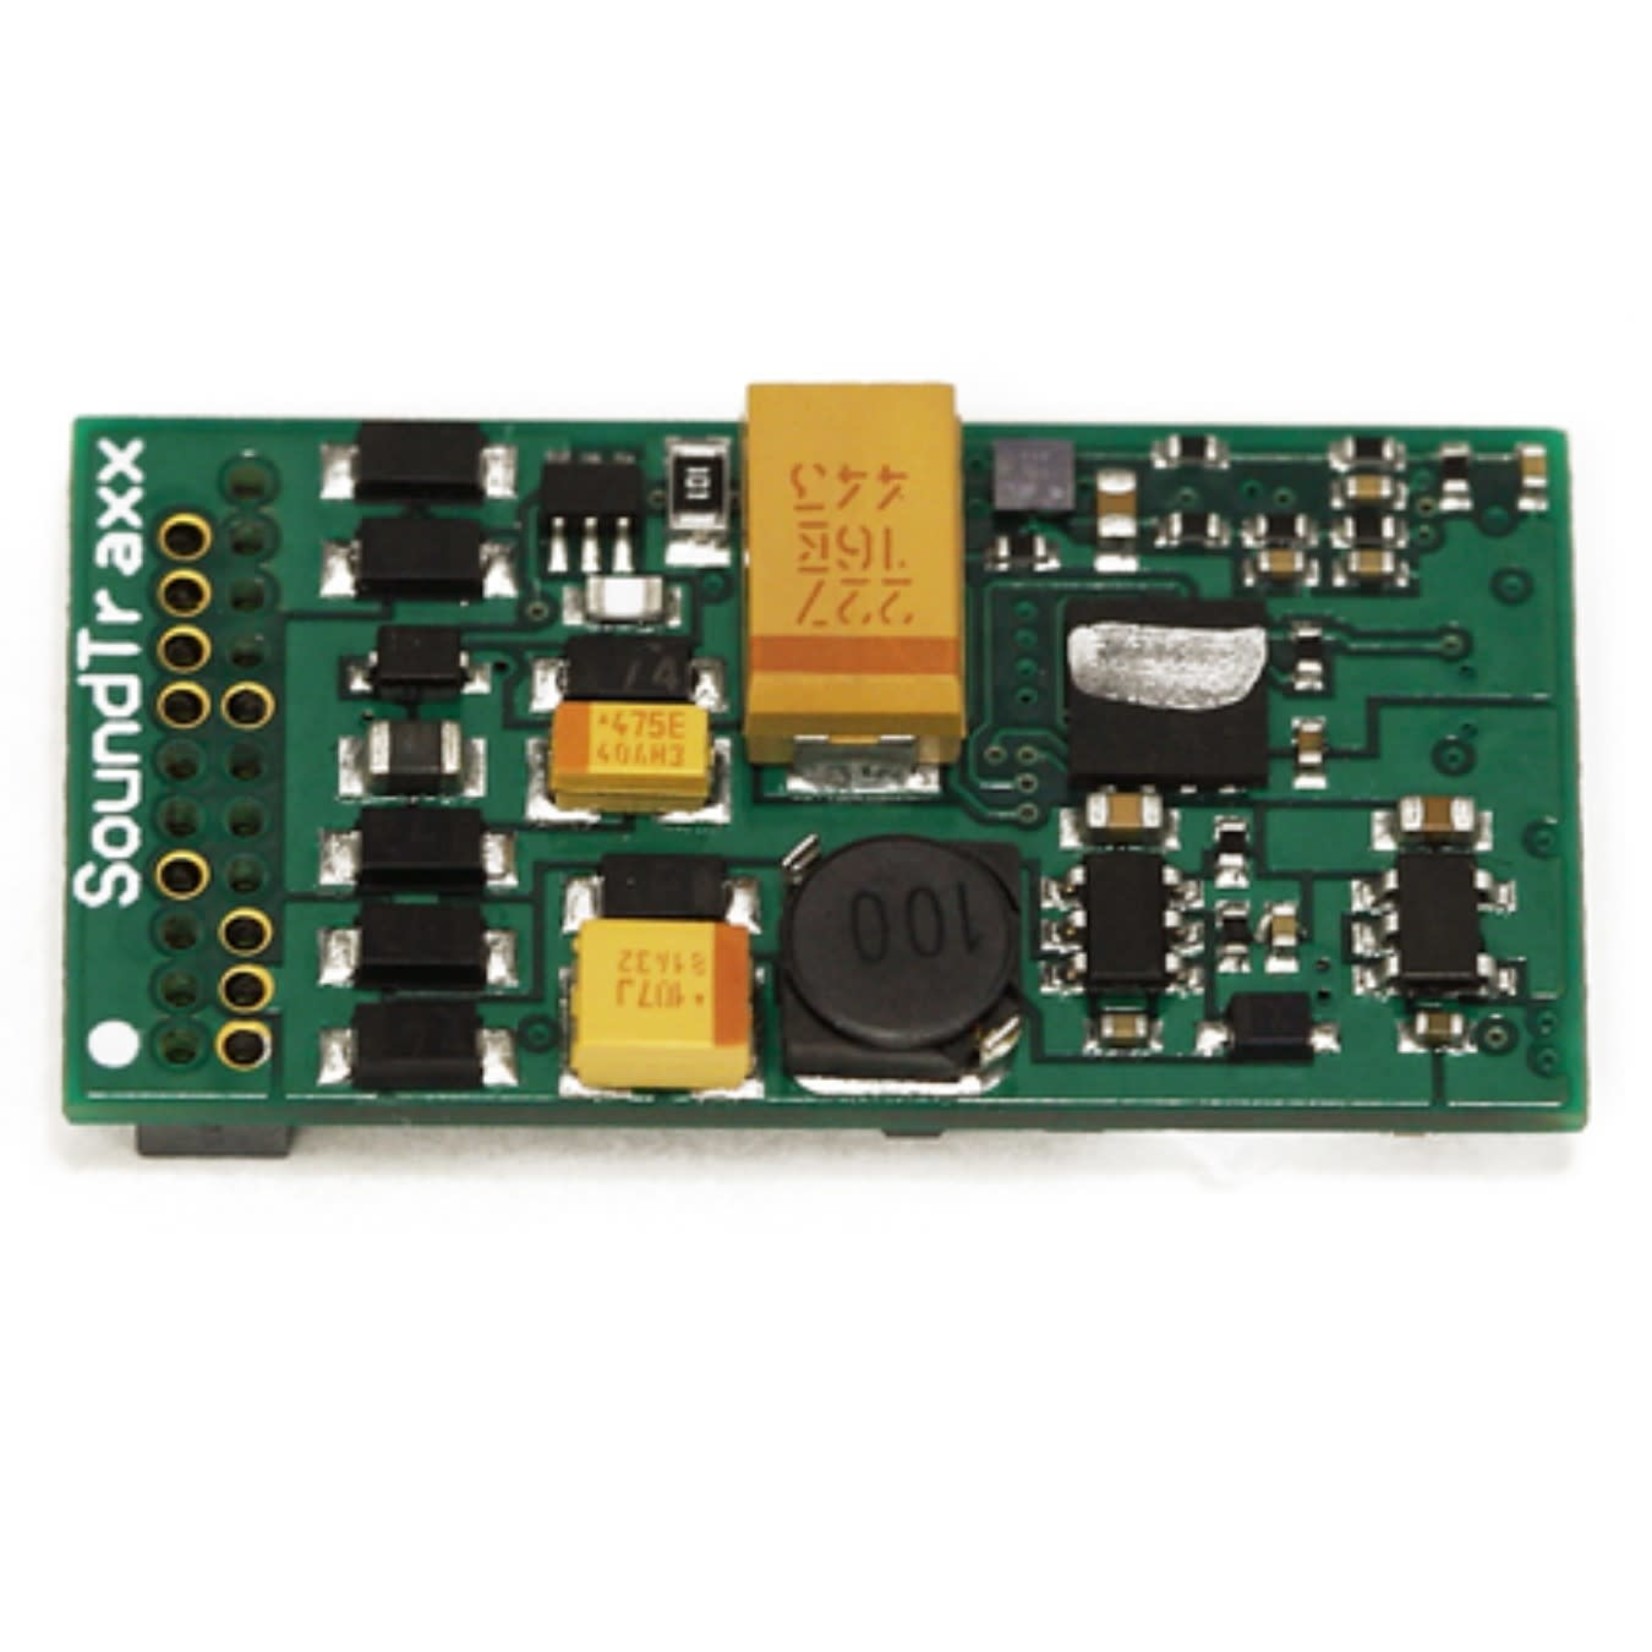 Soundtraxx TSU-PNP -2 EMD sound decoder, 6 function board